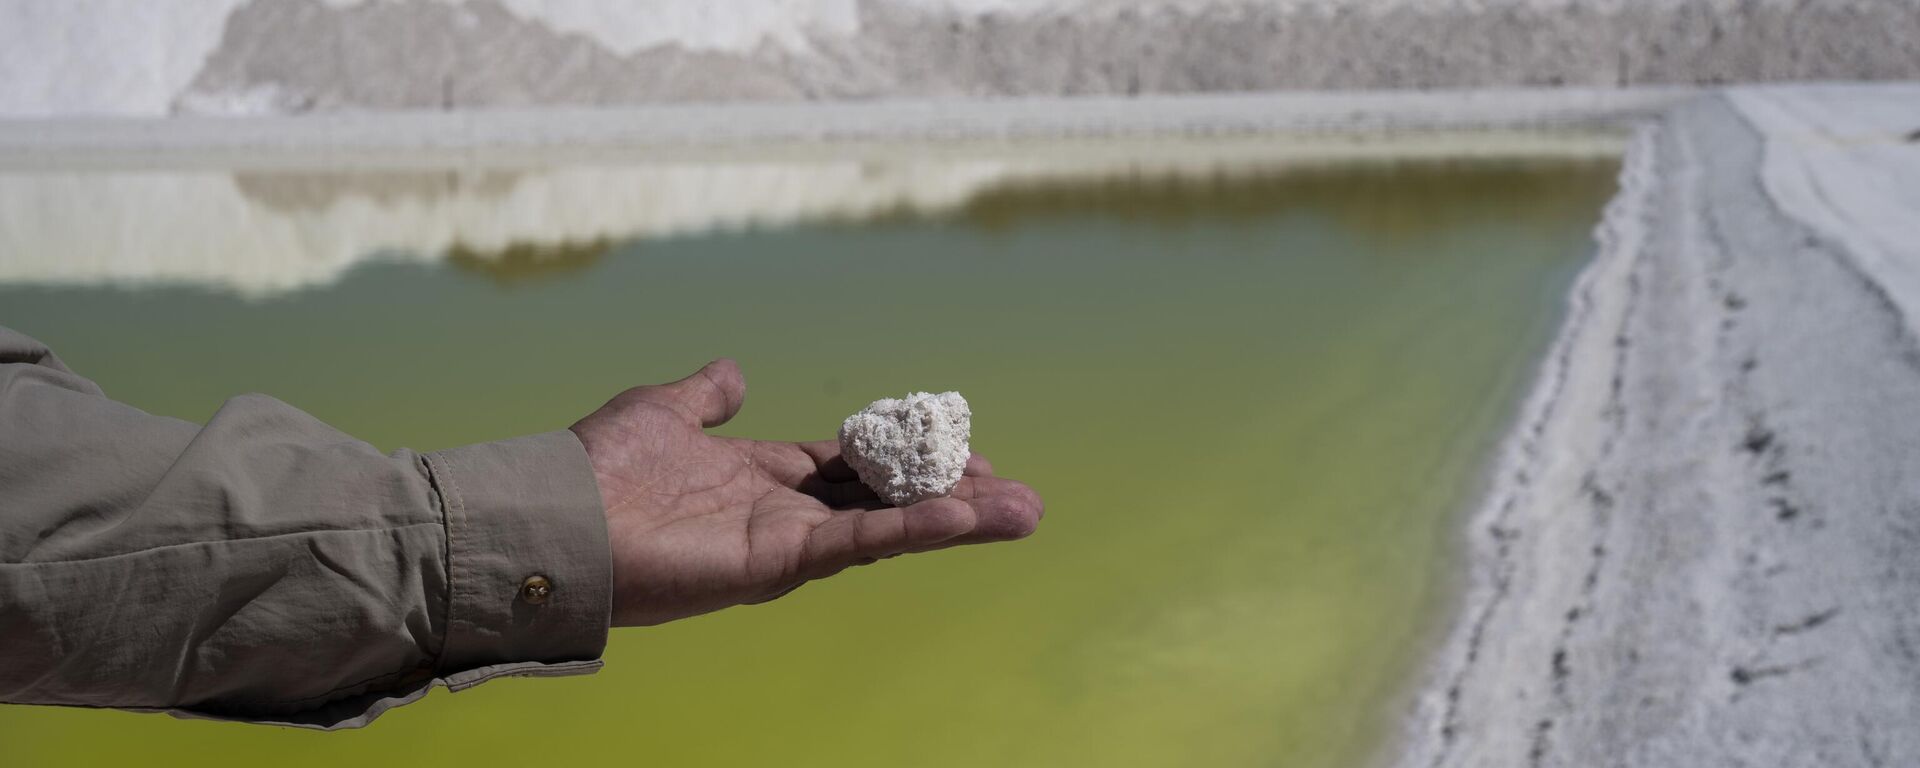 Trabalhador da mina de lítio Albemarle mostra um pedaço de sal perto de uma piscina de salmoura altamente concentrada em lítio no deserto do Atacama, no Chile, segunda-feira, 17 de abril de 2023 - Sputnik Mundo, 1920, 10.11.2023